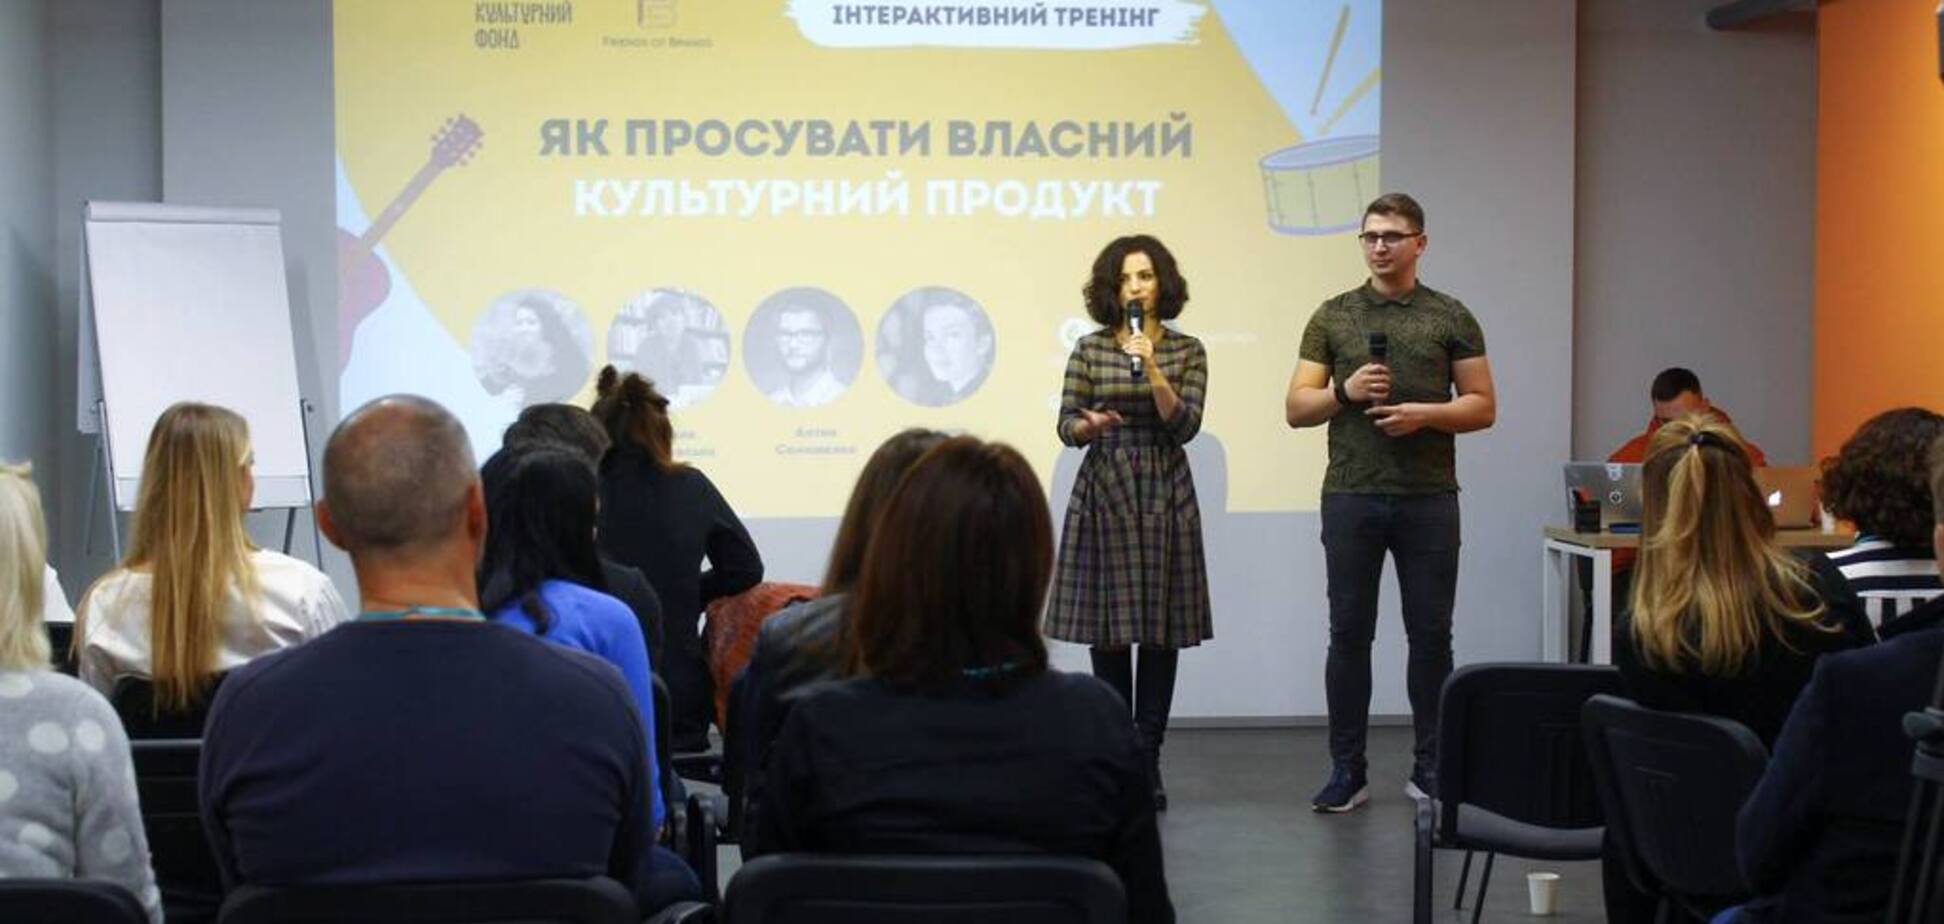 В Украине запустился бесплатный онлайн-курс для художников